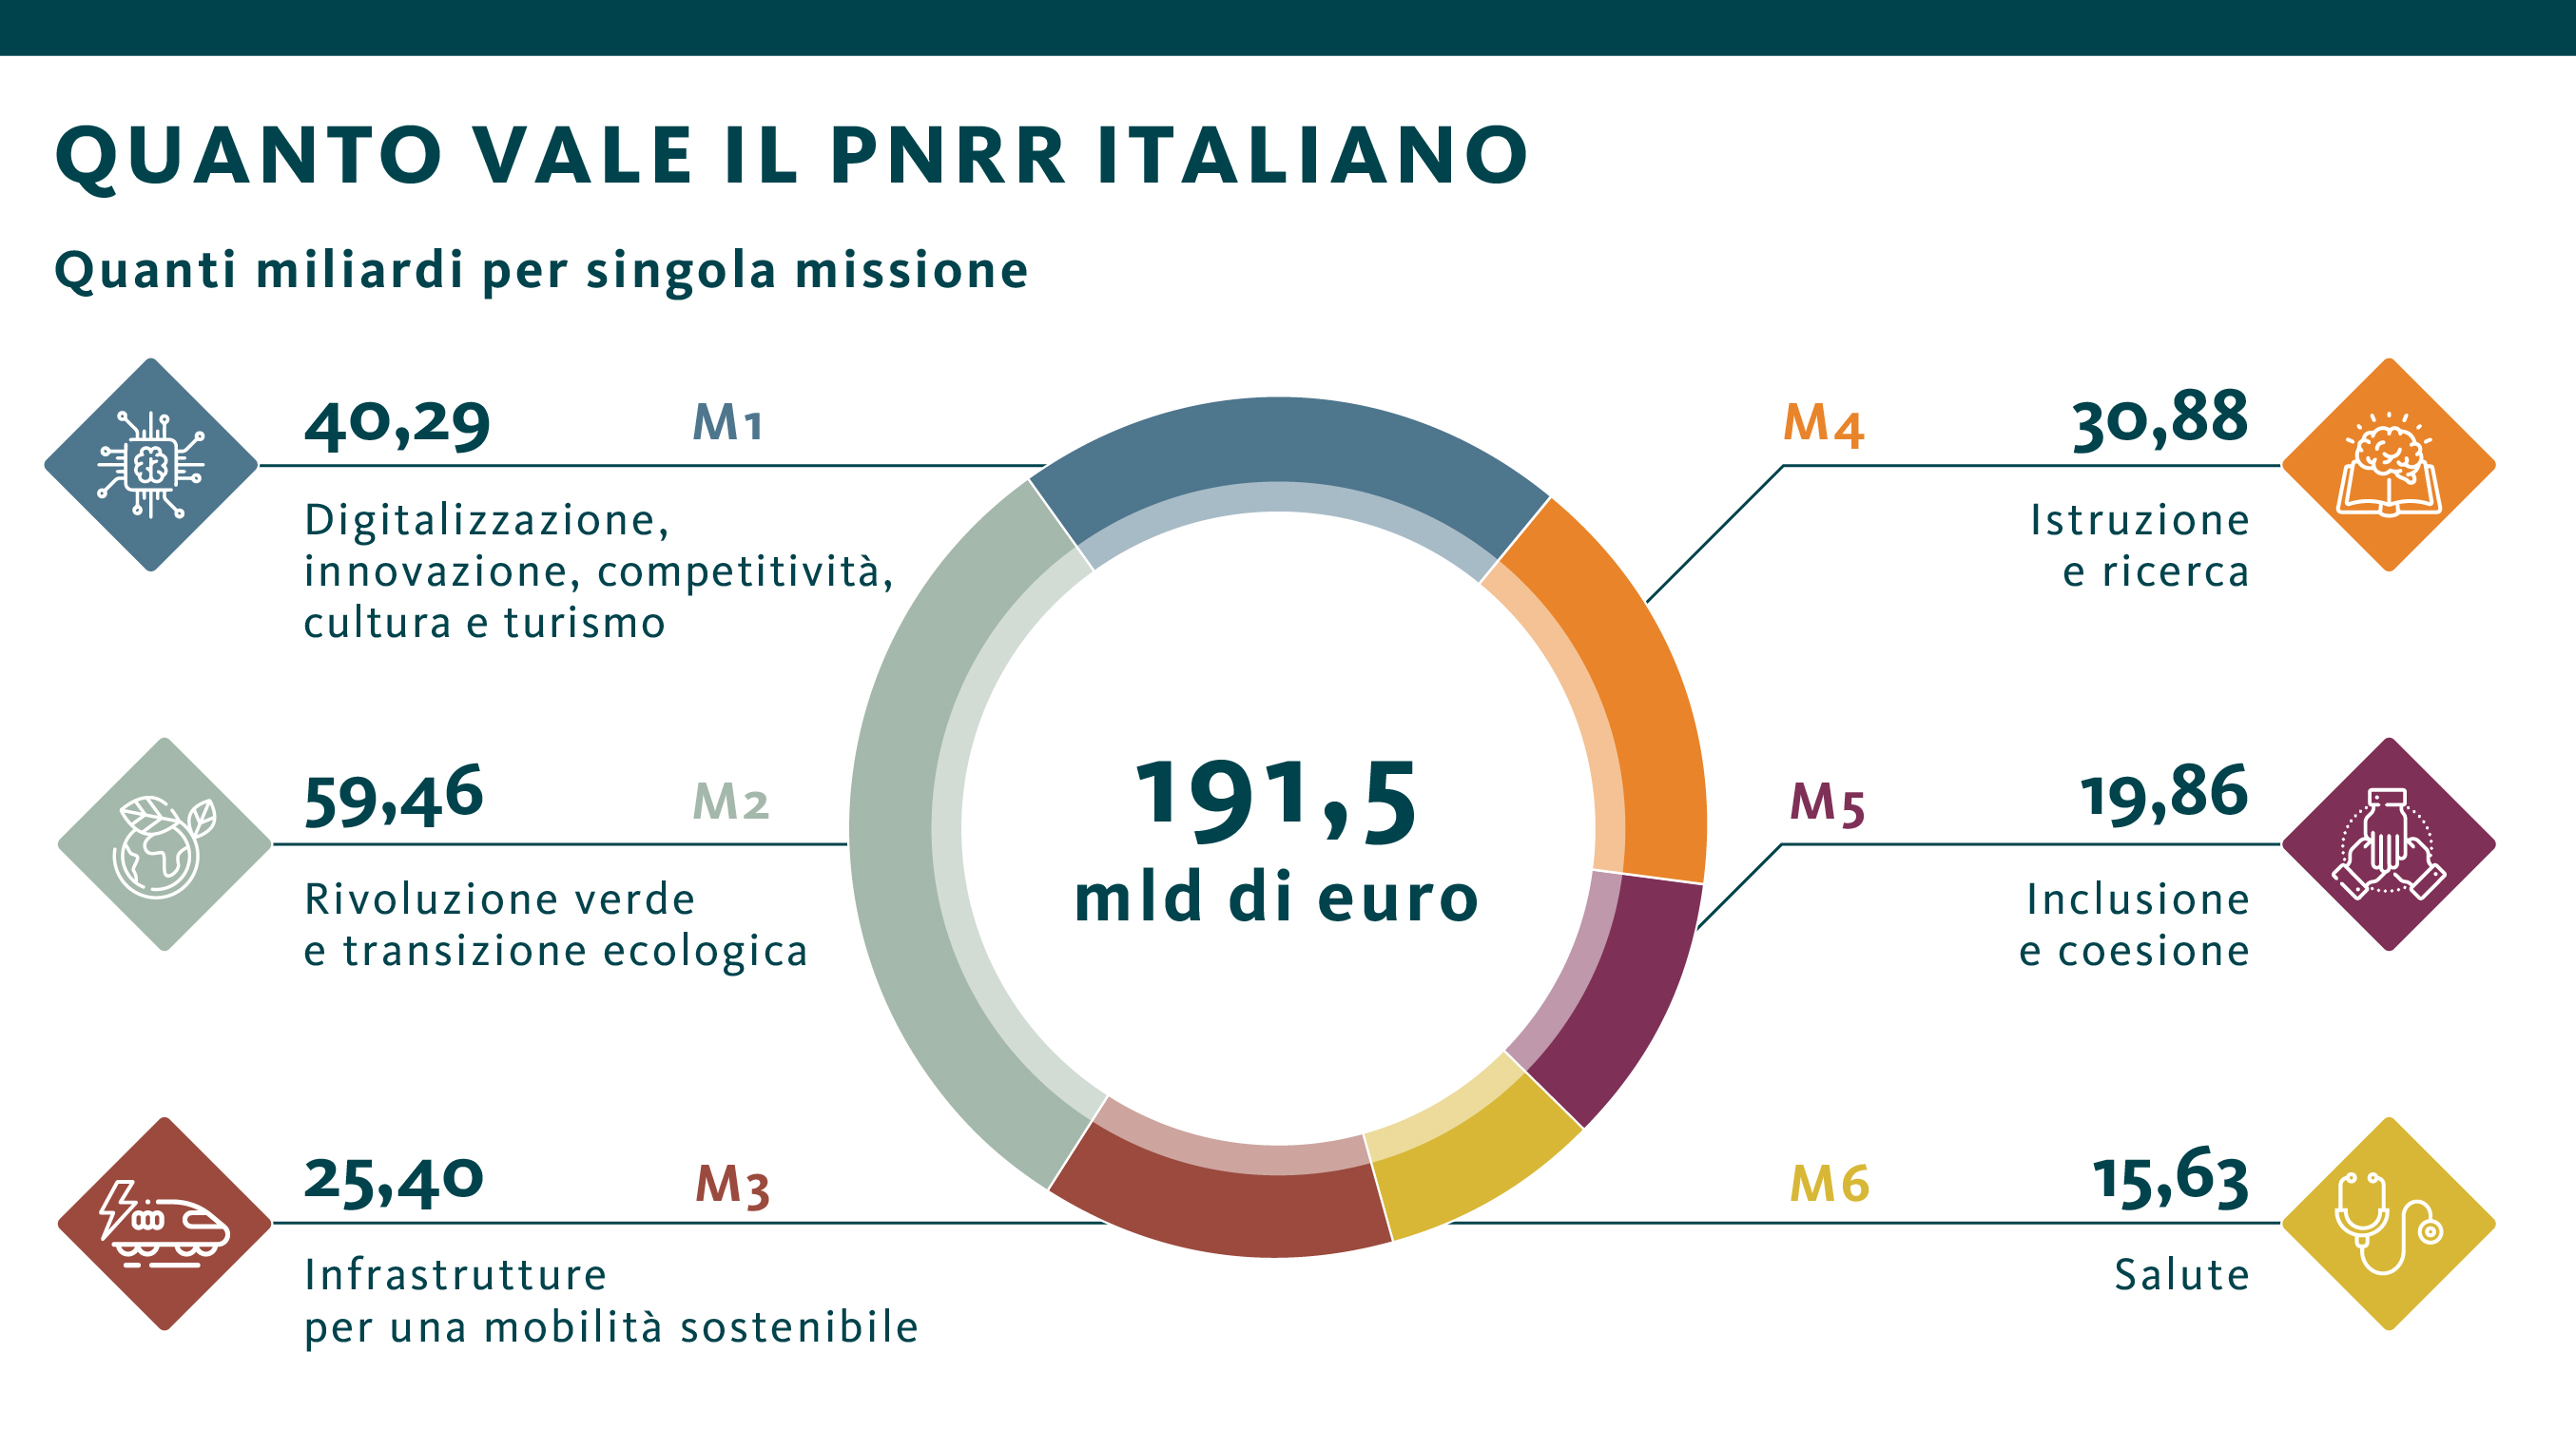 Quanto vale il PNRR Italiano